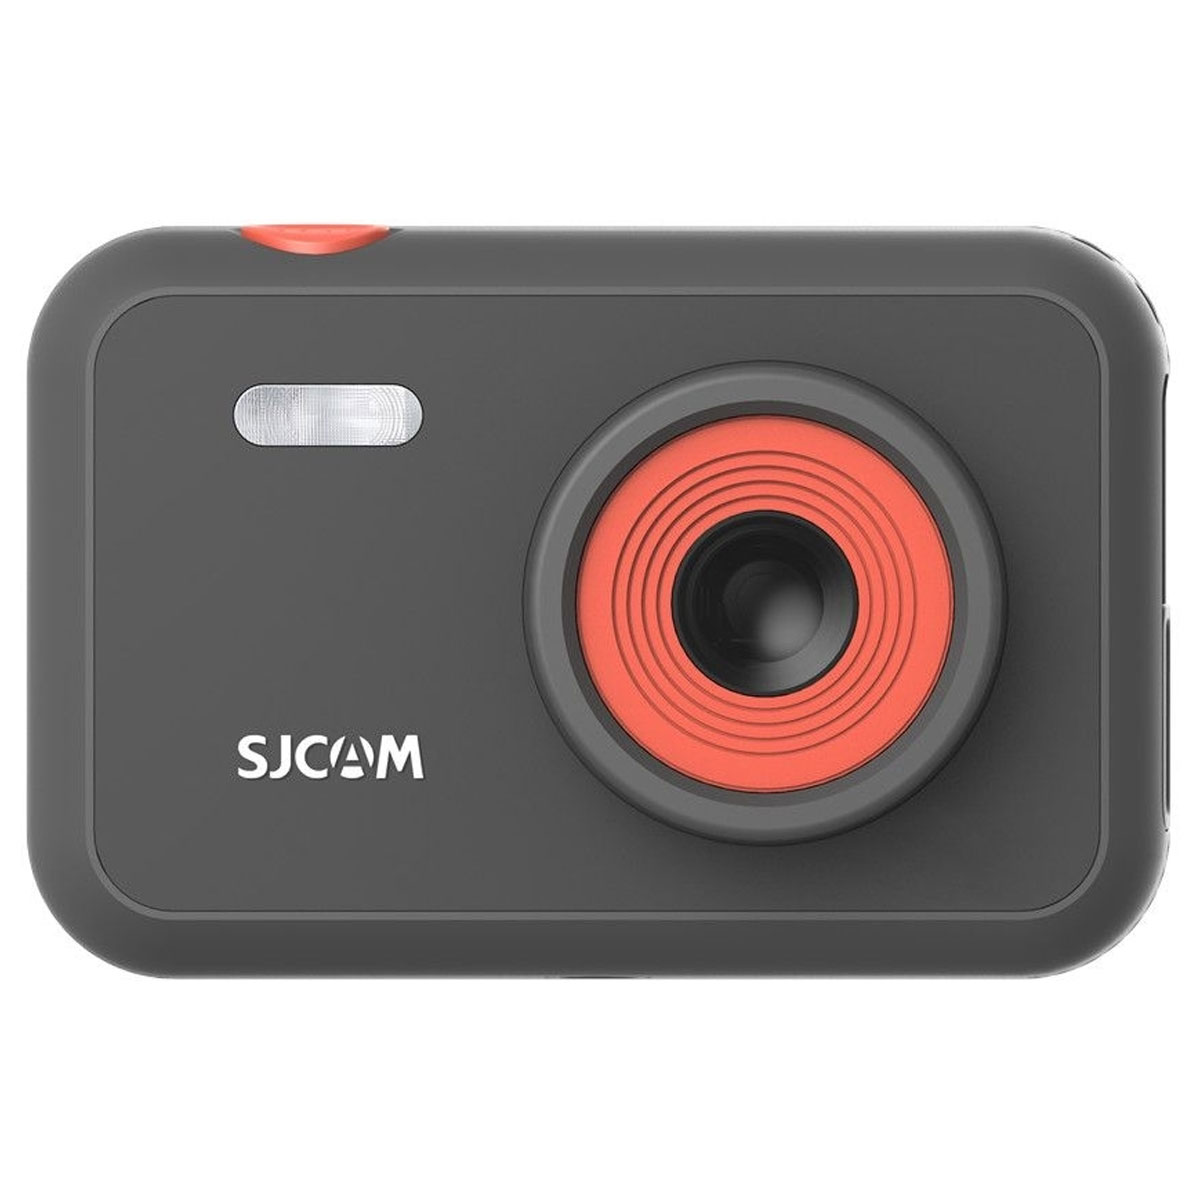 Детская камера SJCAM FunCam (камера для детей) Black